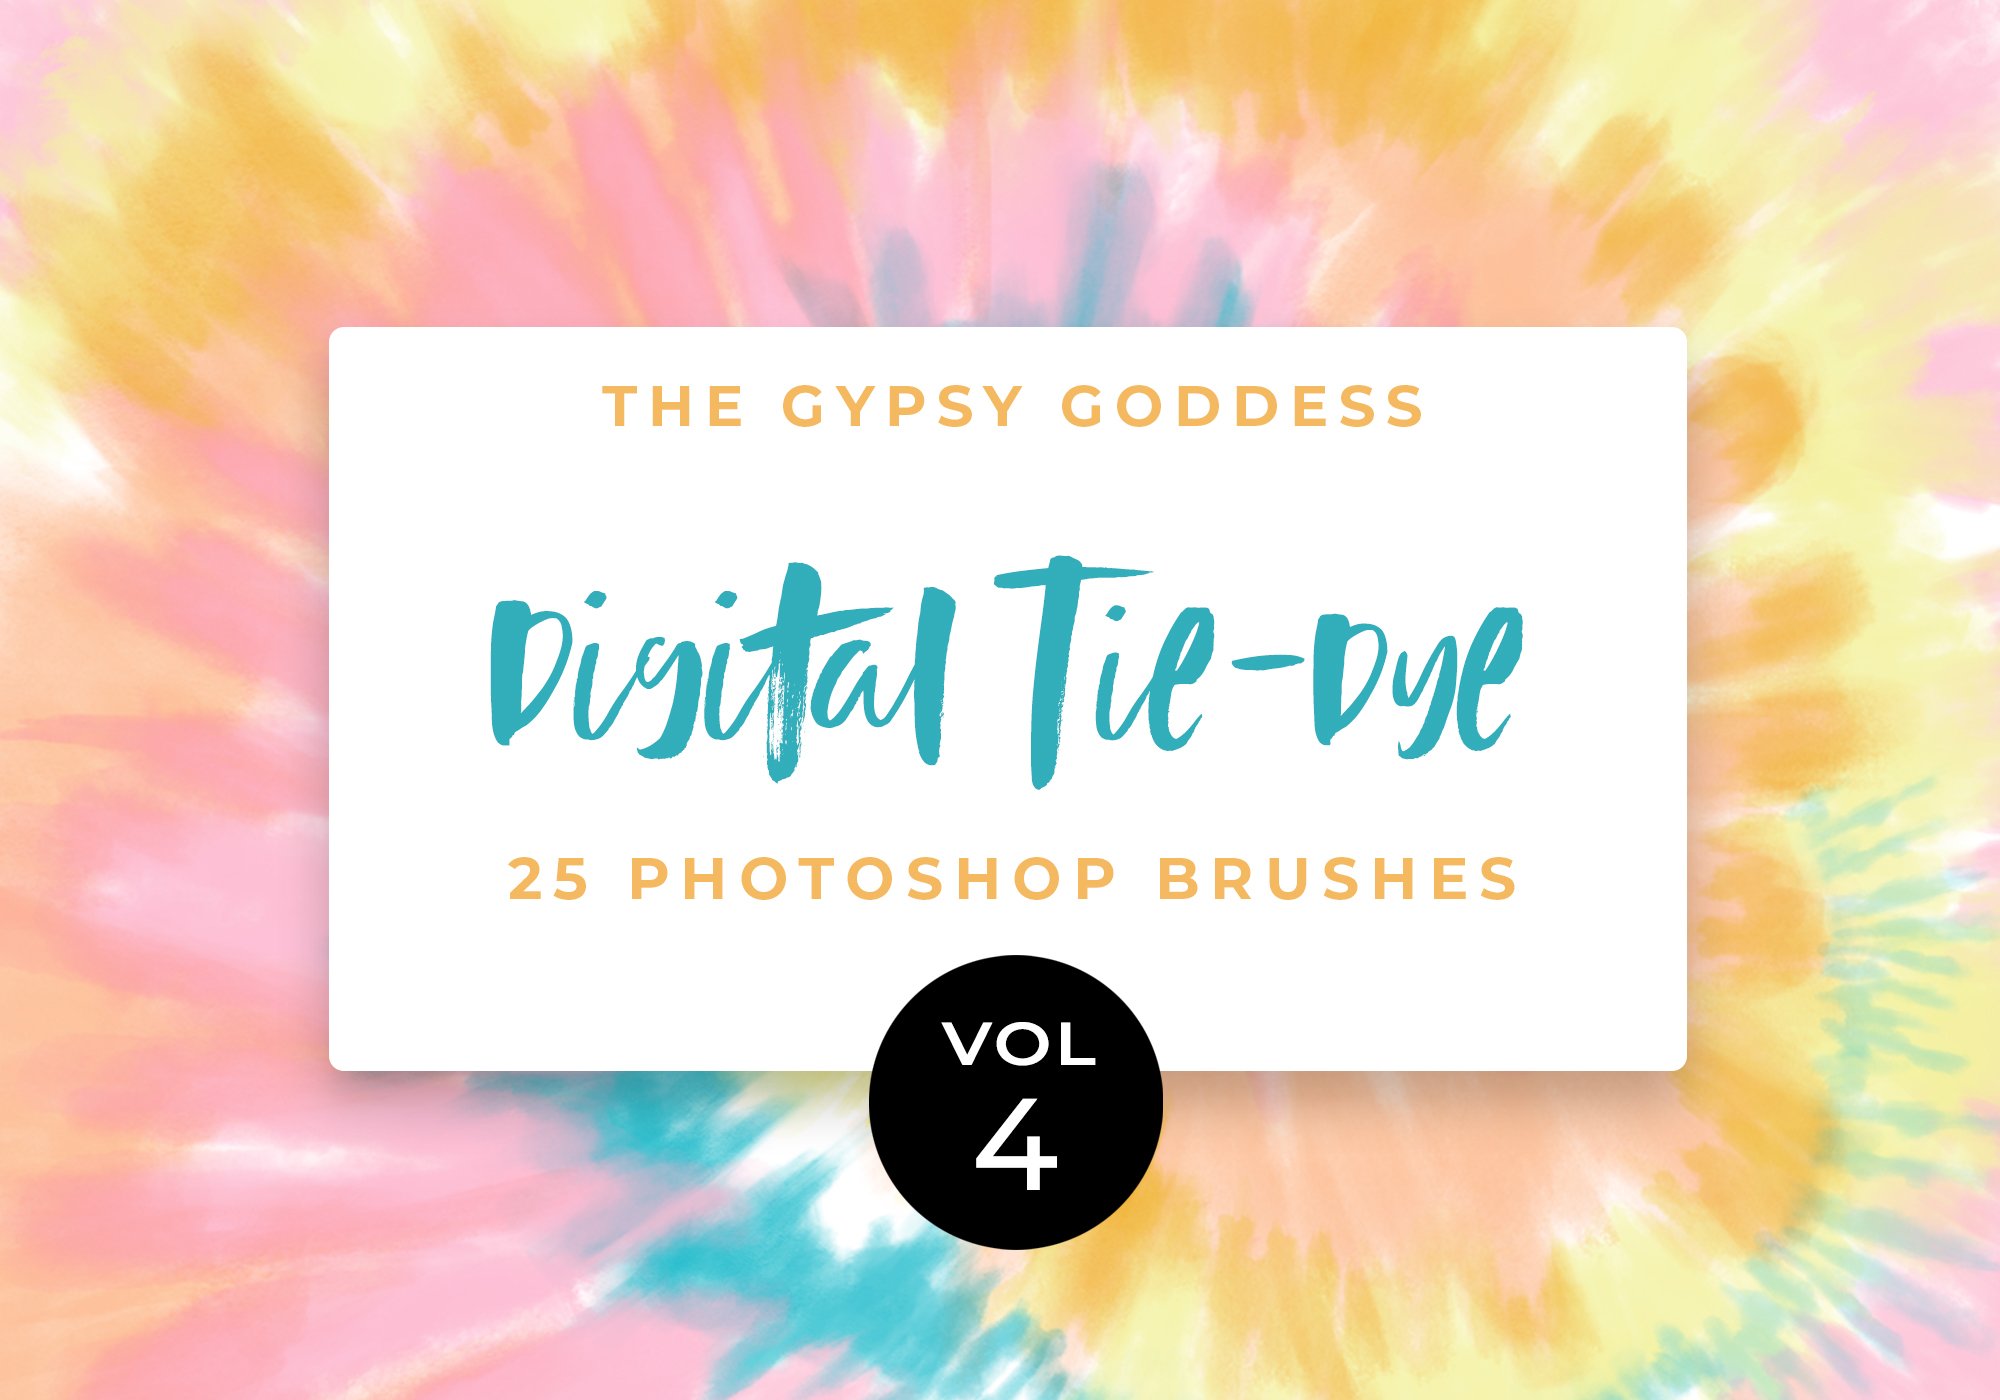 Digital Tie-Dye Brushes Vol 1 - The Gypsy Goddess